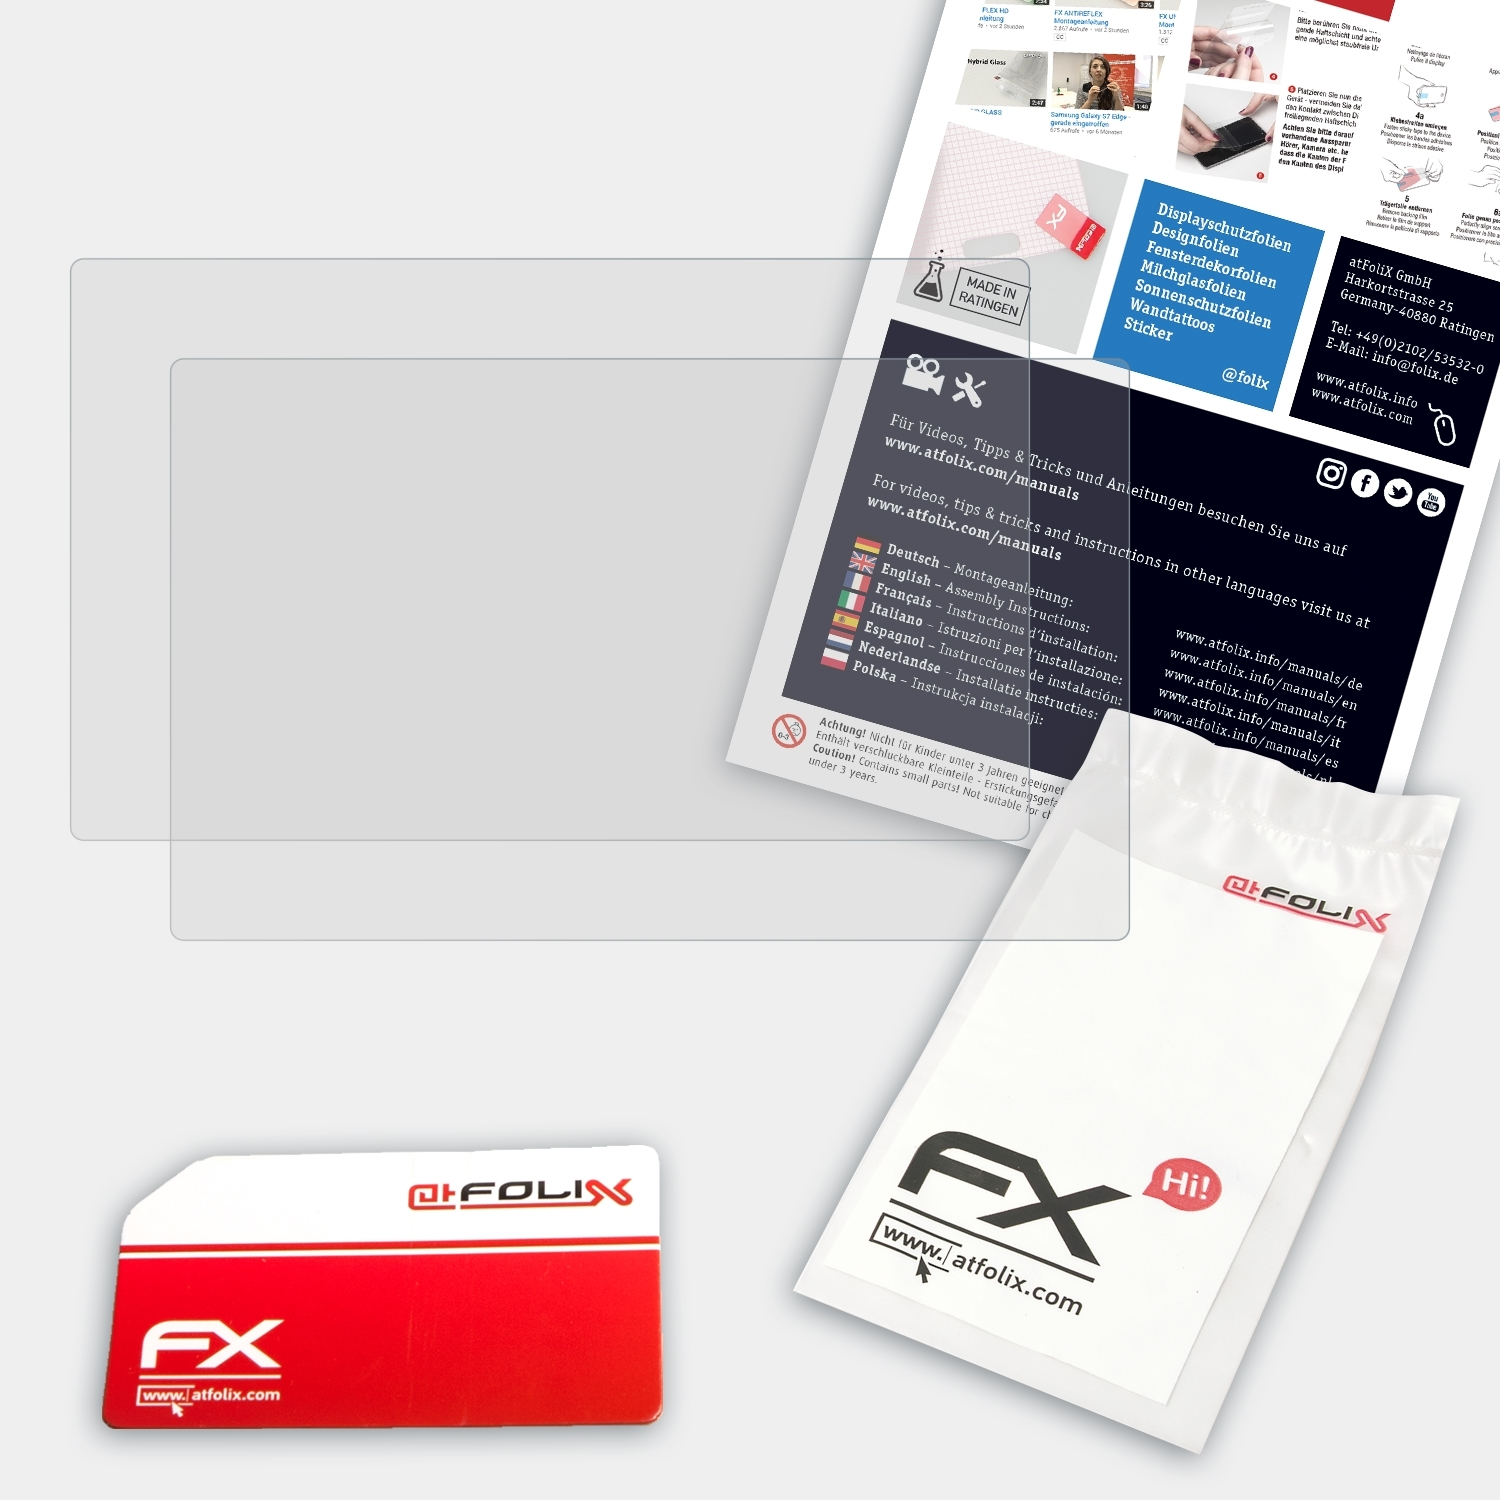 ATFOLIX 2x FX-Antireflex Displayschutz(für XP-PEN Pro) 22R Artist